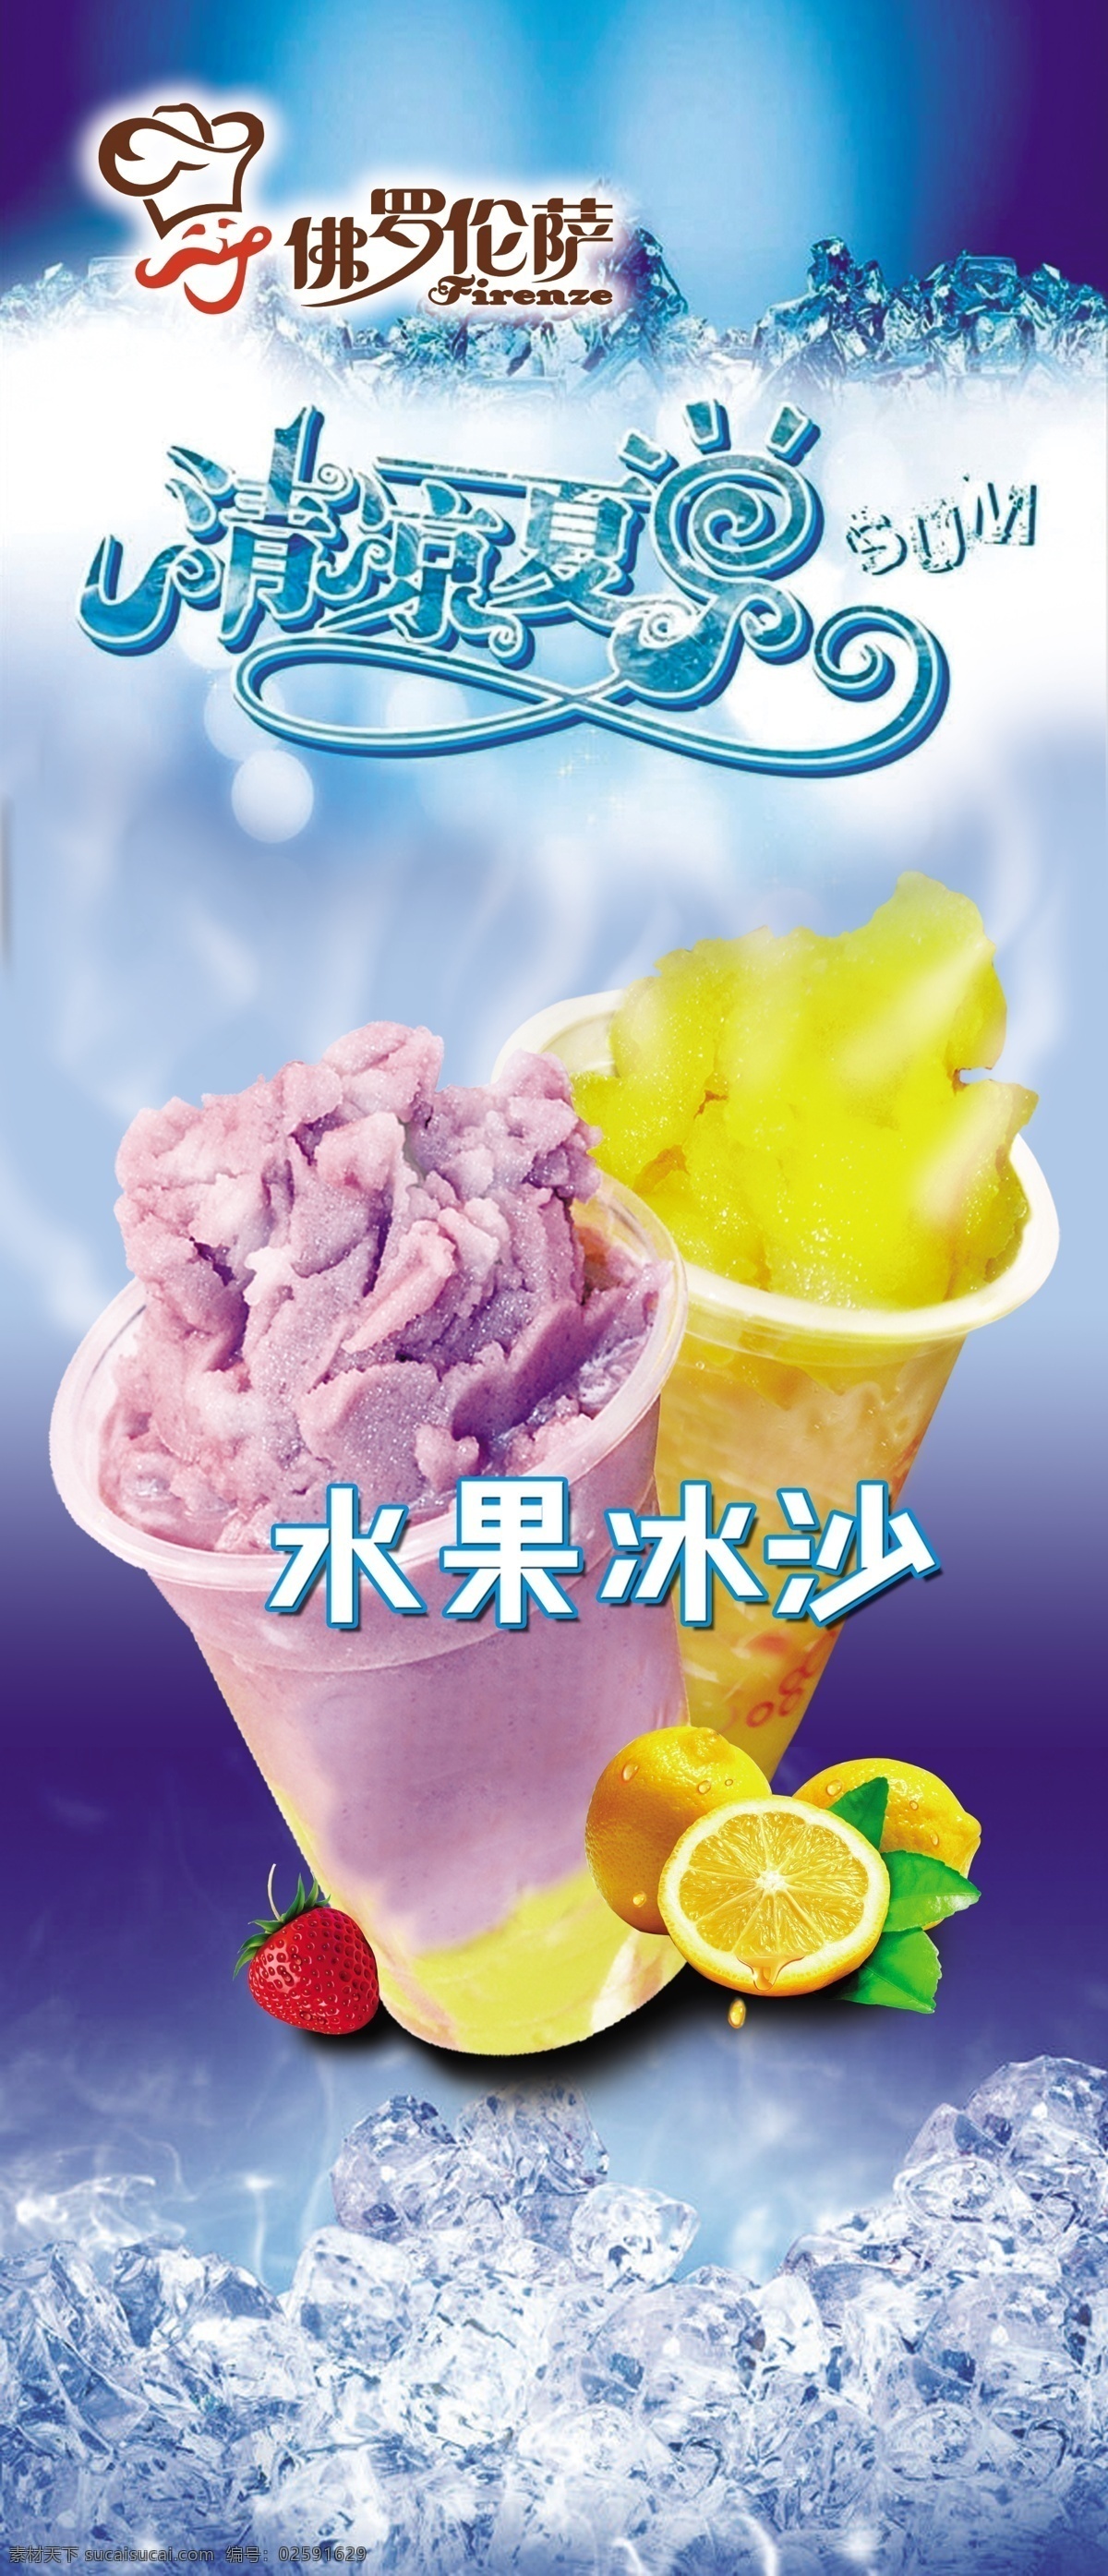 水果沙冰海报 水果沙拉 海报 冰凉夏日 蓝莓 芒果 草莓 柠檬 冰块 蓝色